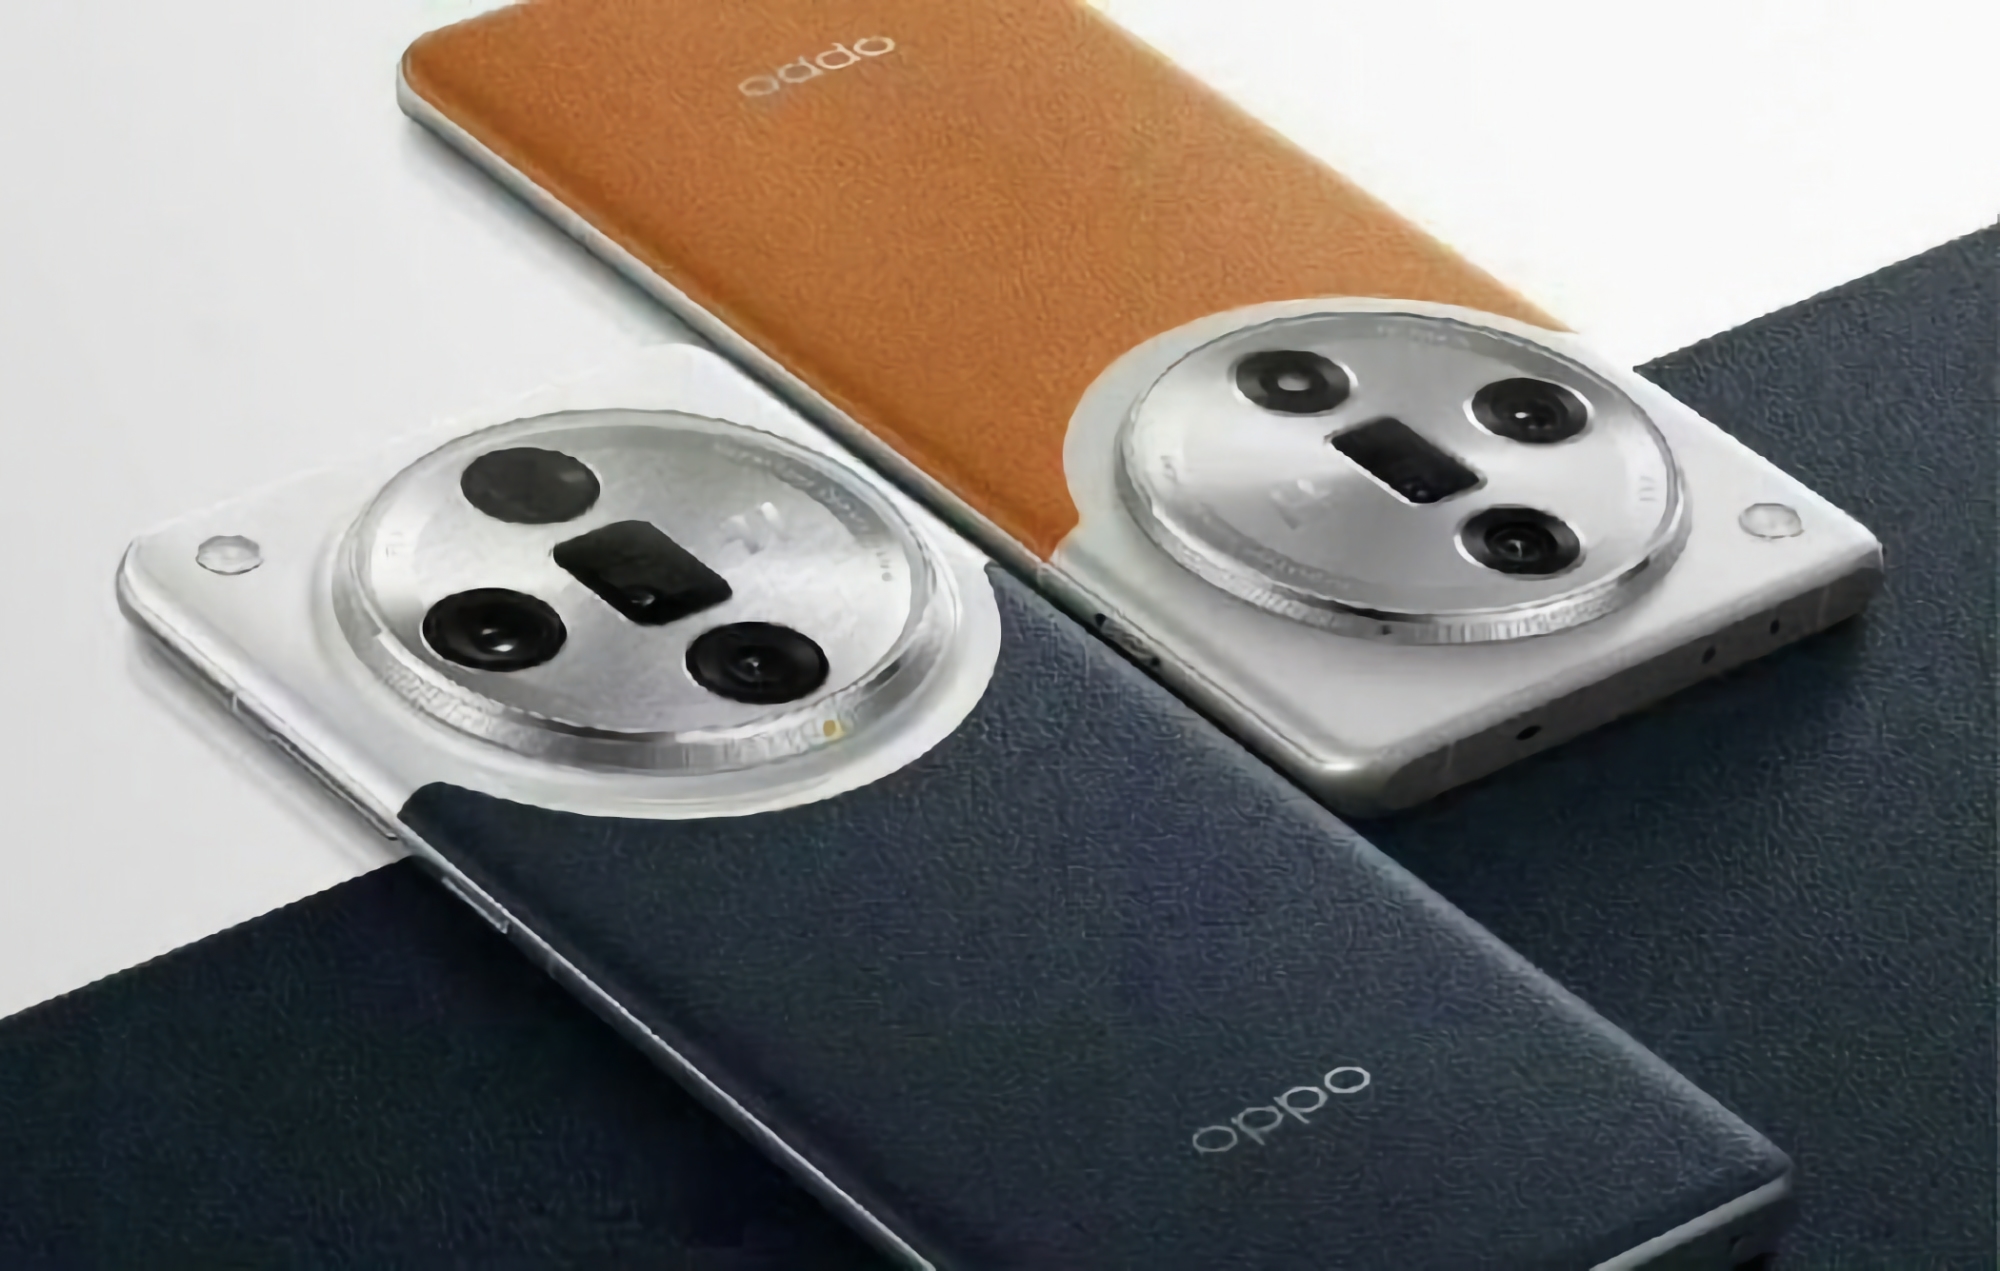 Find X7 og Find X7 Ultra: OPPOs nye flaggskip-serie av smarttelefoner vil bestå av to modeller